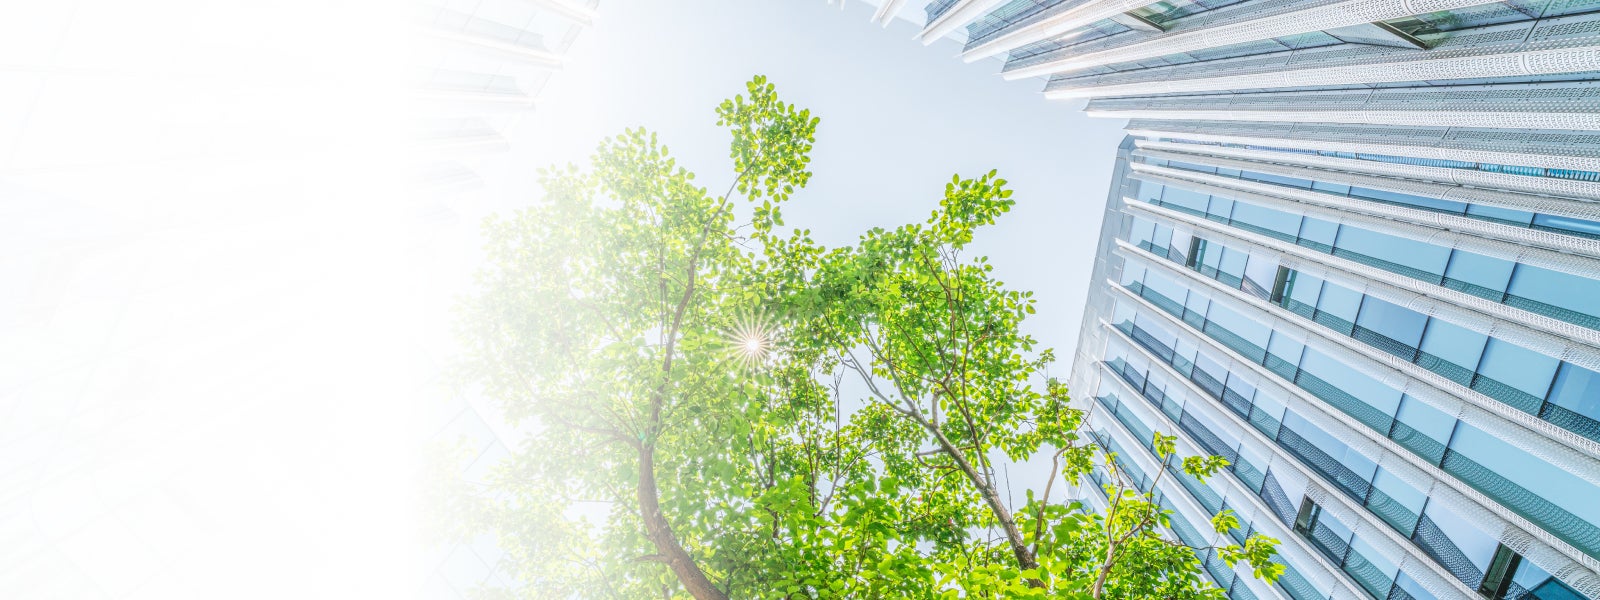 Eine moderne, große Gewerbeimmobilie mit Glasfront ist aus einem Winkel vom Boden aufgenommen. Ebenfalls ist eine grüne Baumkrone zu sehen, durch die einzelne Sonnenstrahlen zu sehen sind. Der Stimmung im Bild ist hell und sommerlich.